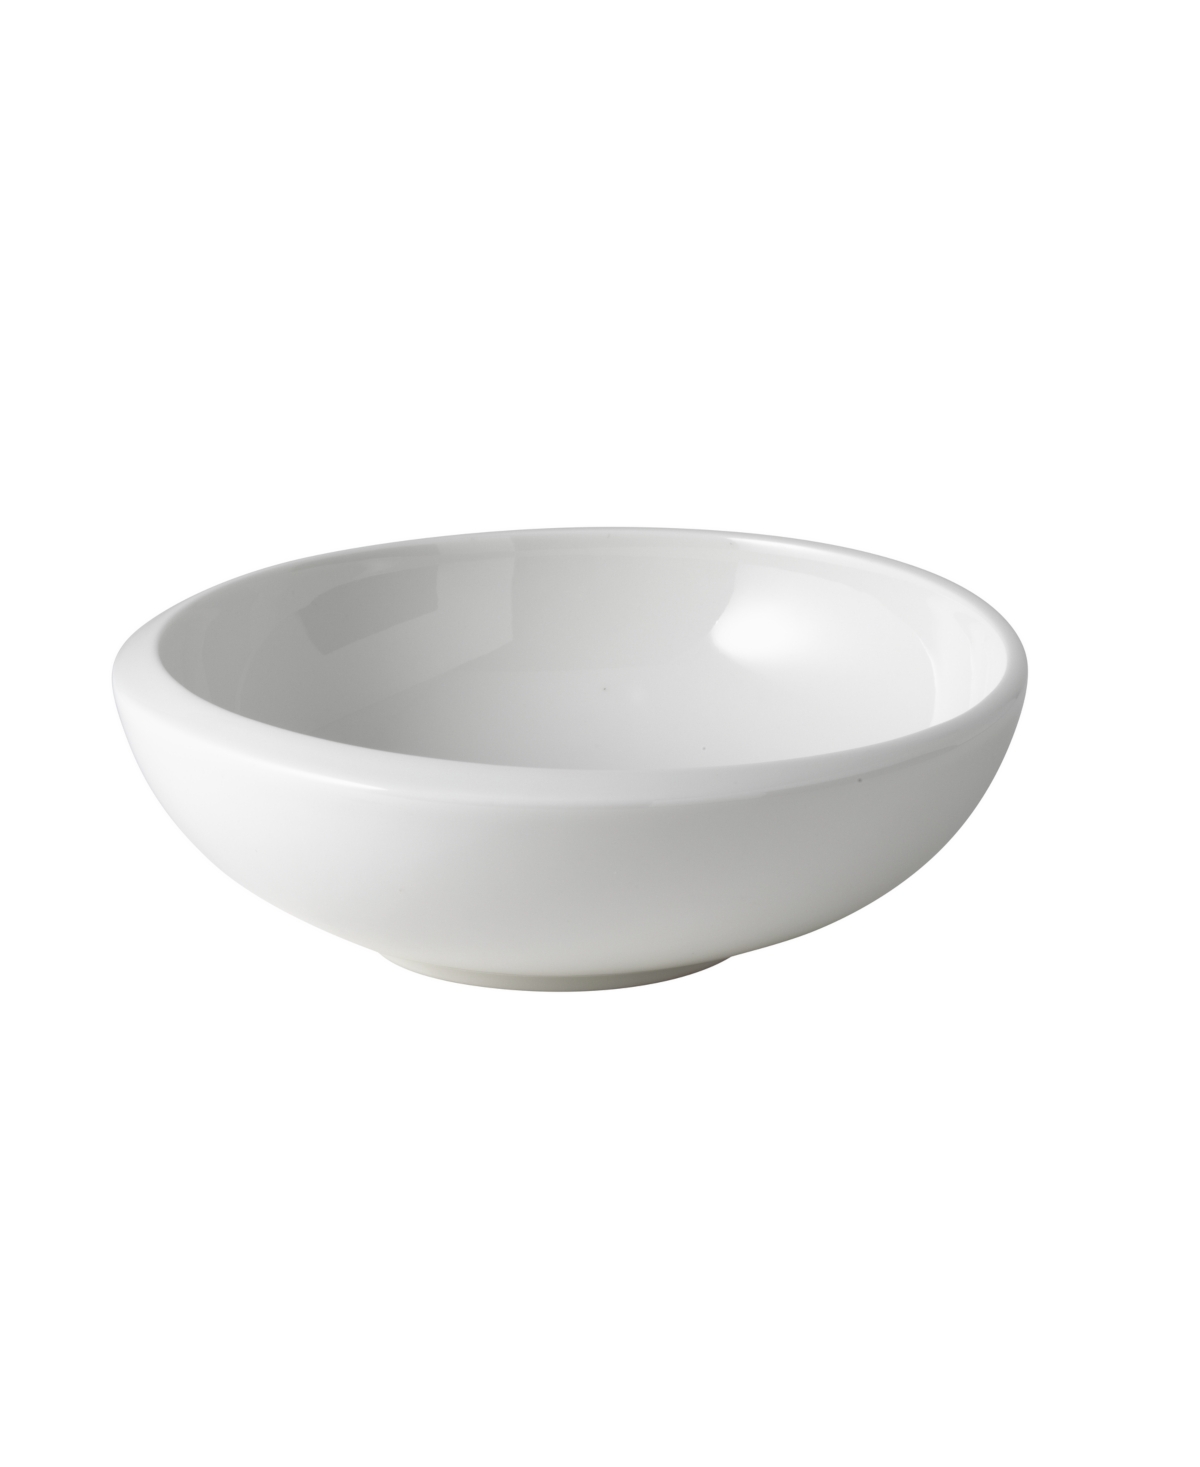 Dishwasher Safe White 750 ml Salad or Desserts Maofof Premium Porcelain Villeroy & Boch New Moon BOL 10-4264-1900 Modern Bowl for Cereals Soups 